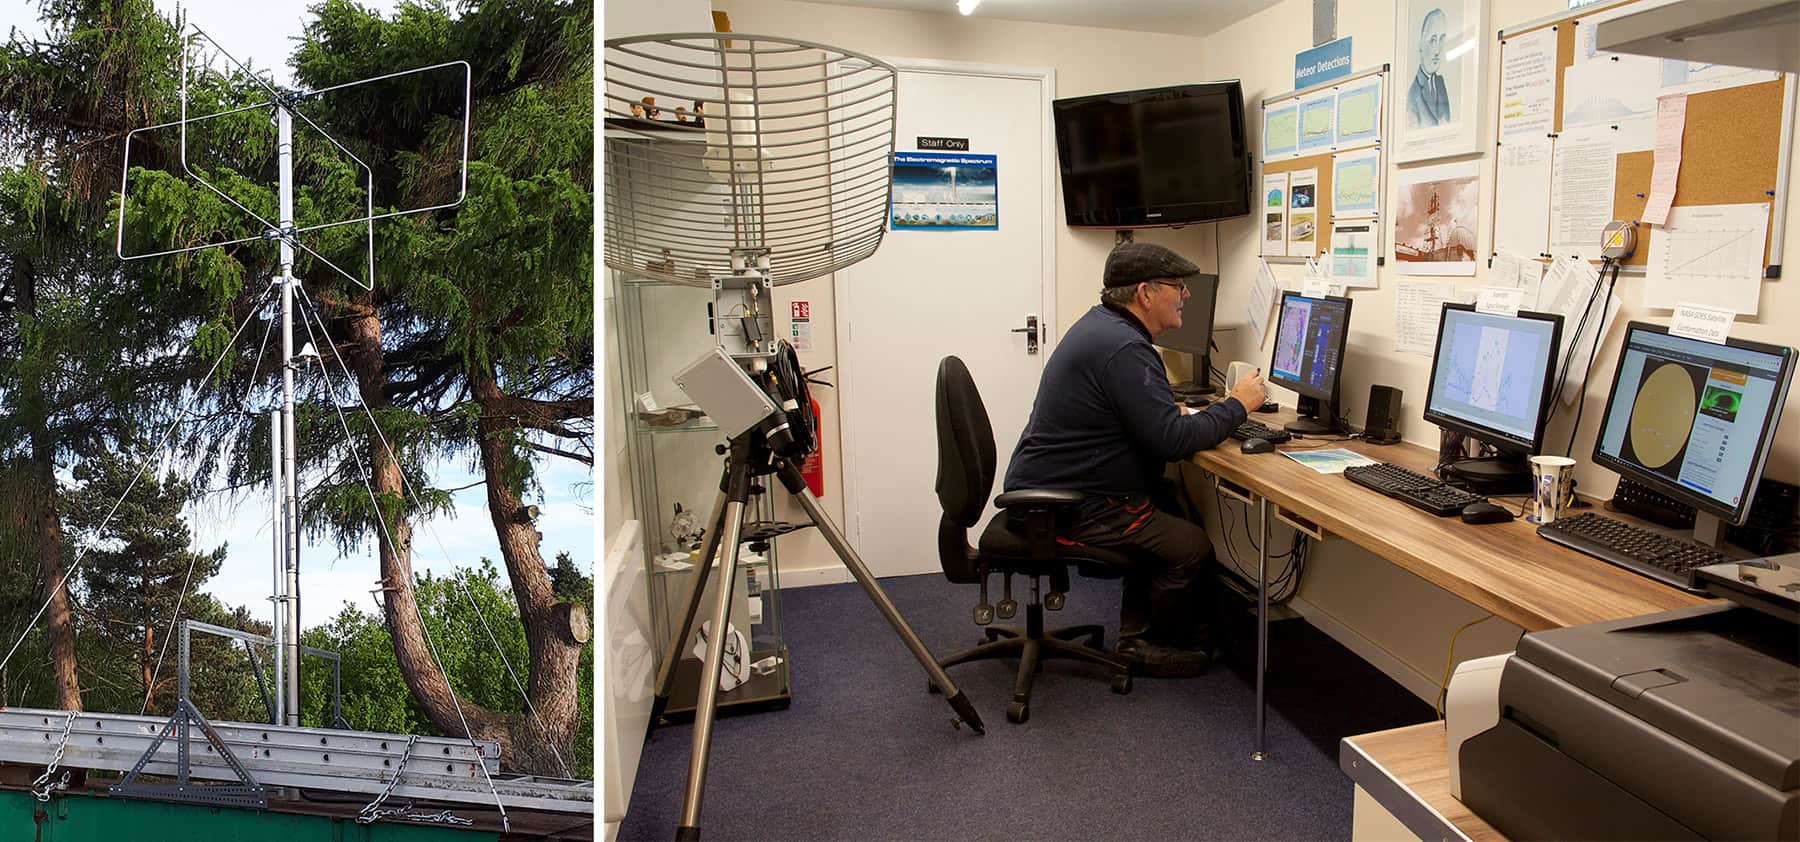 Dve fotografiji: radijski svetilnik in moški, ki sedita za mizo in gledata več monitorjev podatkov